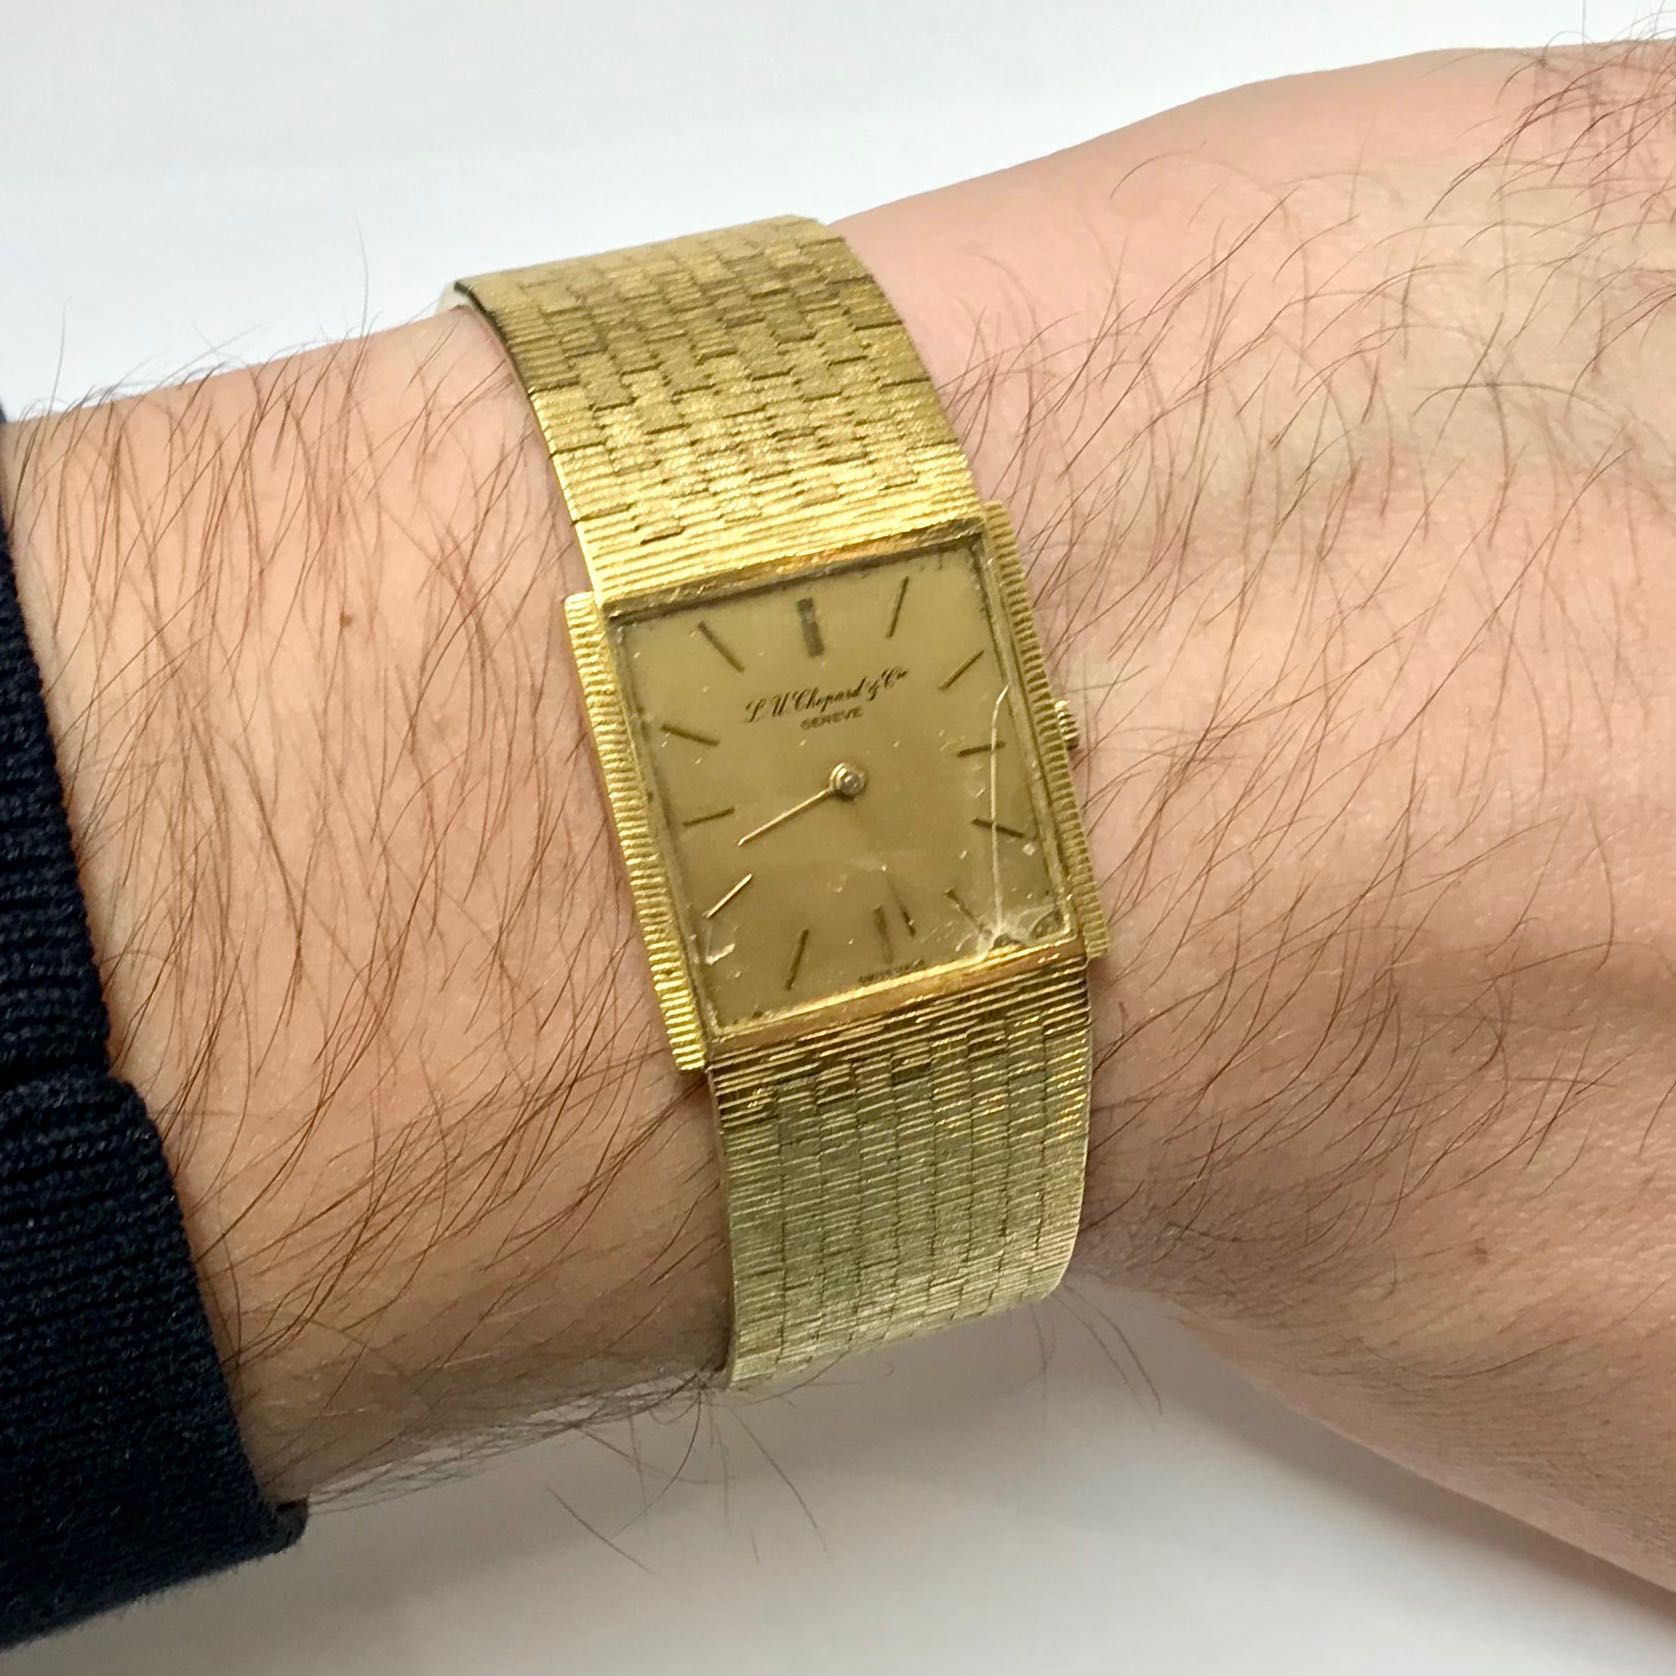 L. U. C. CHOPARD Geneve Złoty zegarek 750 18K MECHANICZNY klasyczny